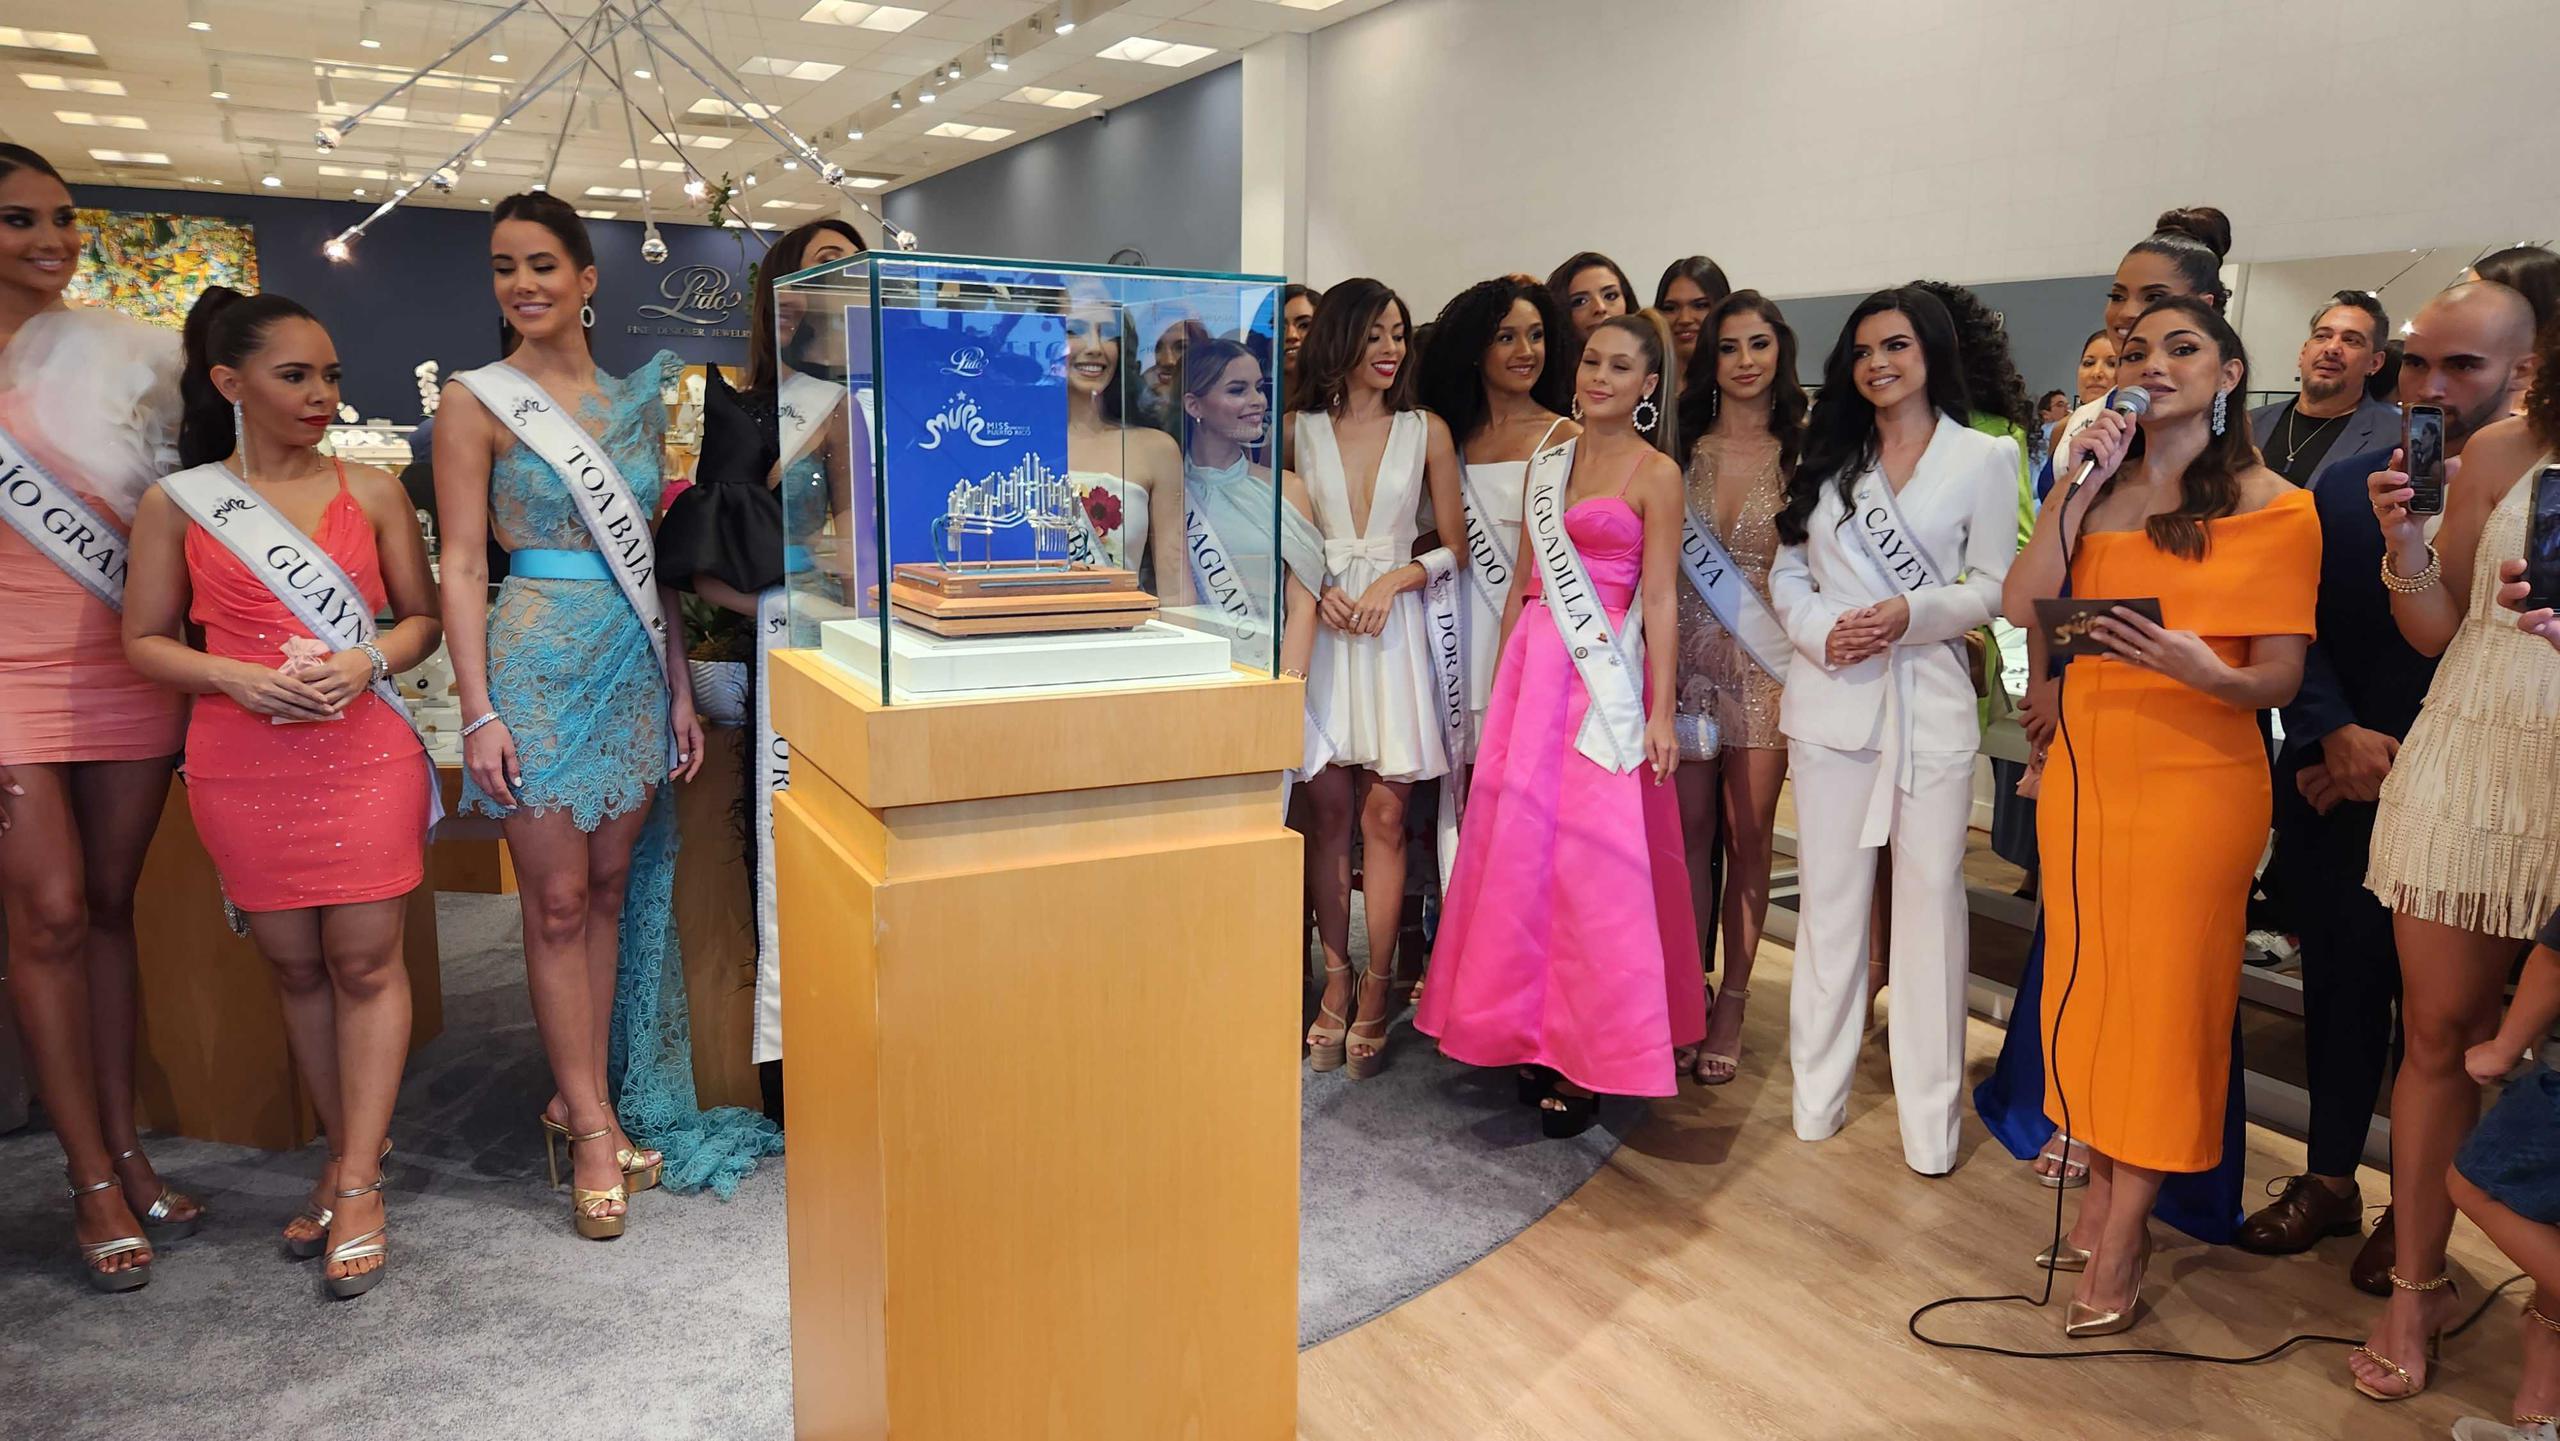 La nueva corona "Evolución" fue presentada en la joyería Lido, en Mall of San Juan.